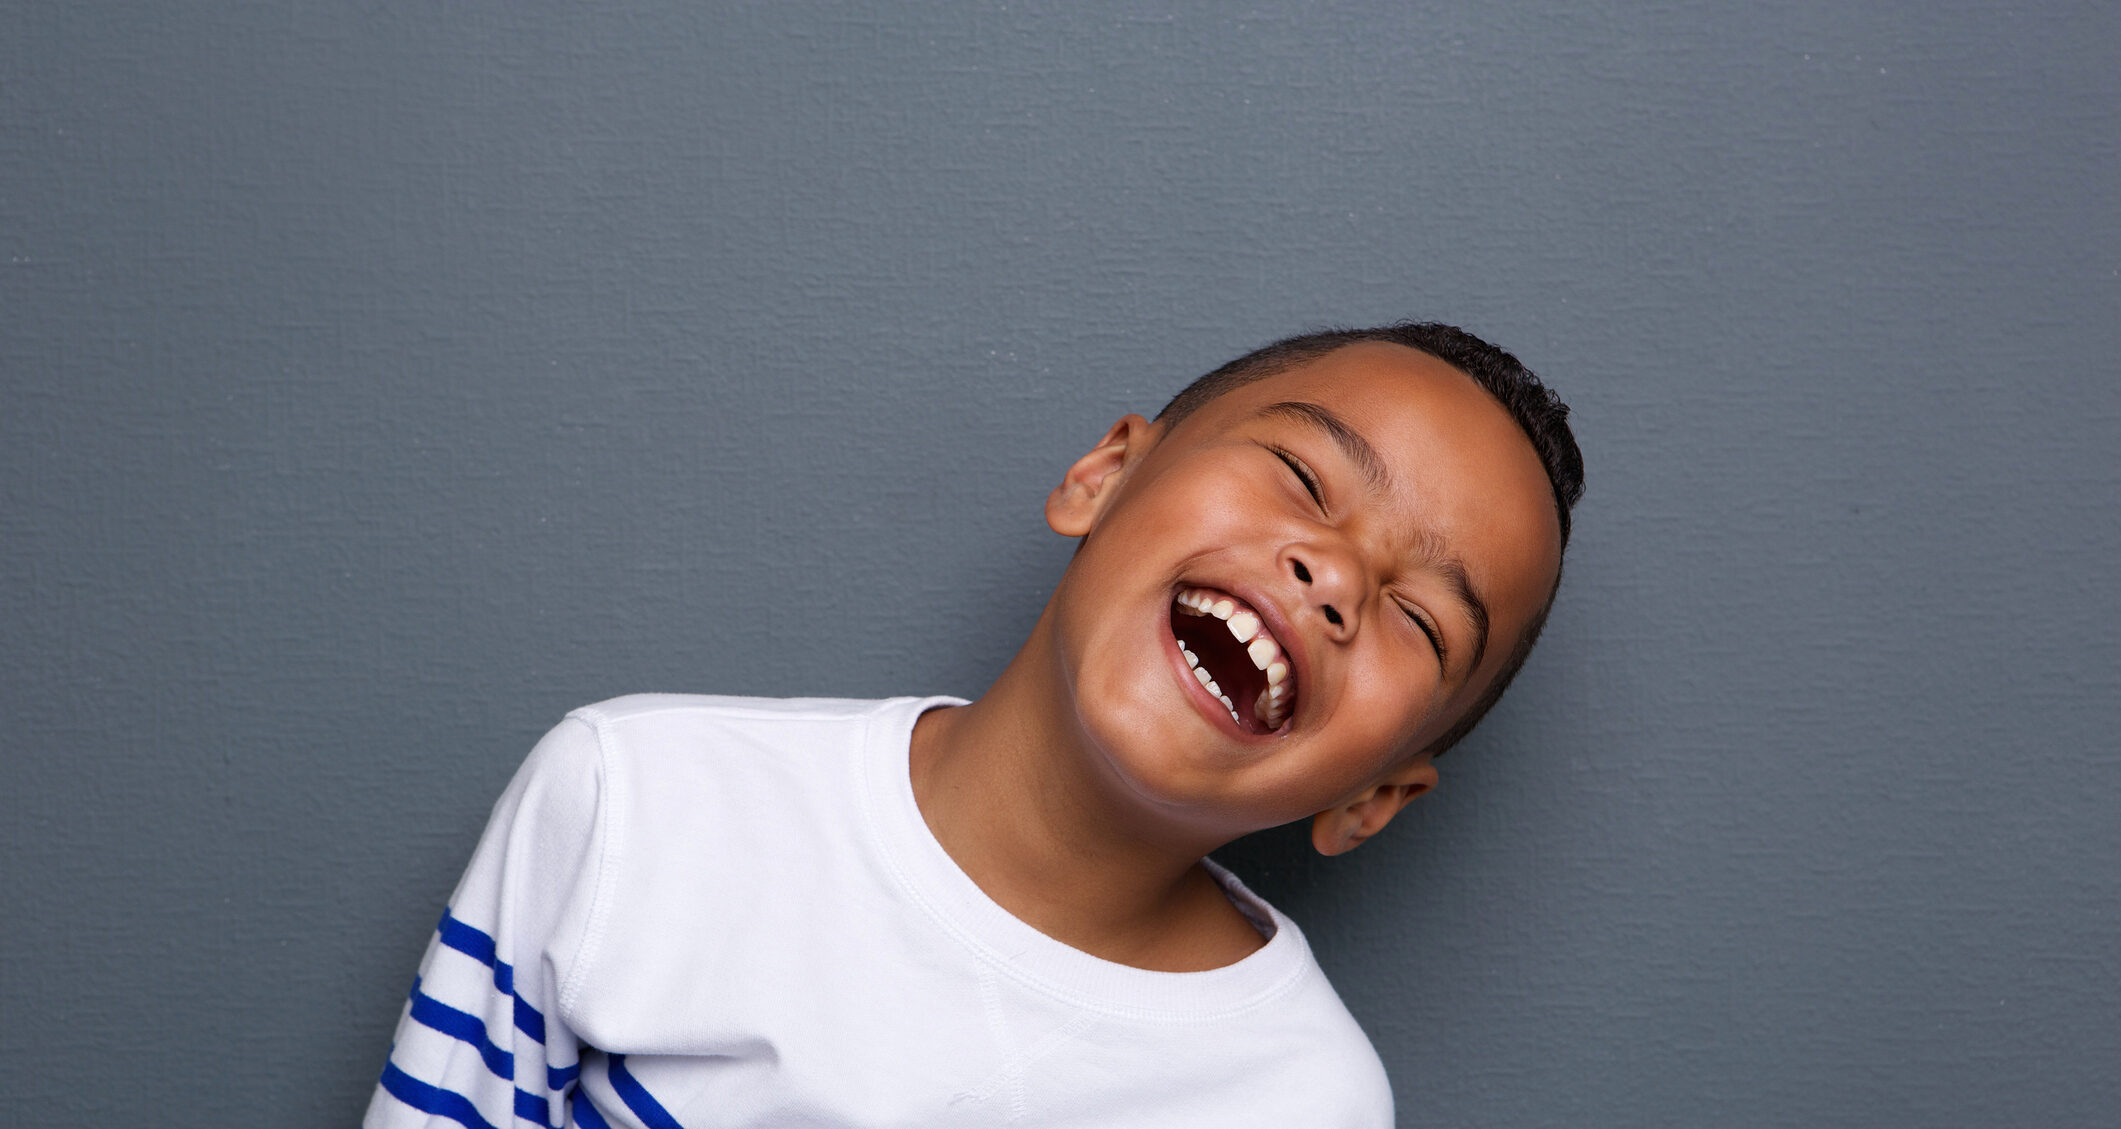 Close up portrait of a happy little boy smiling